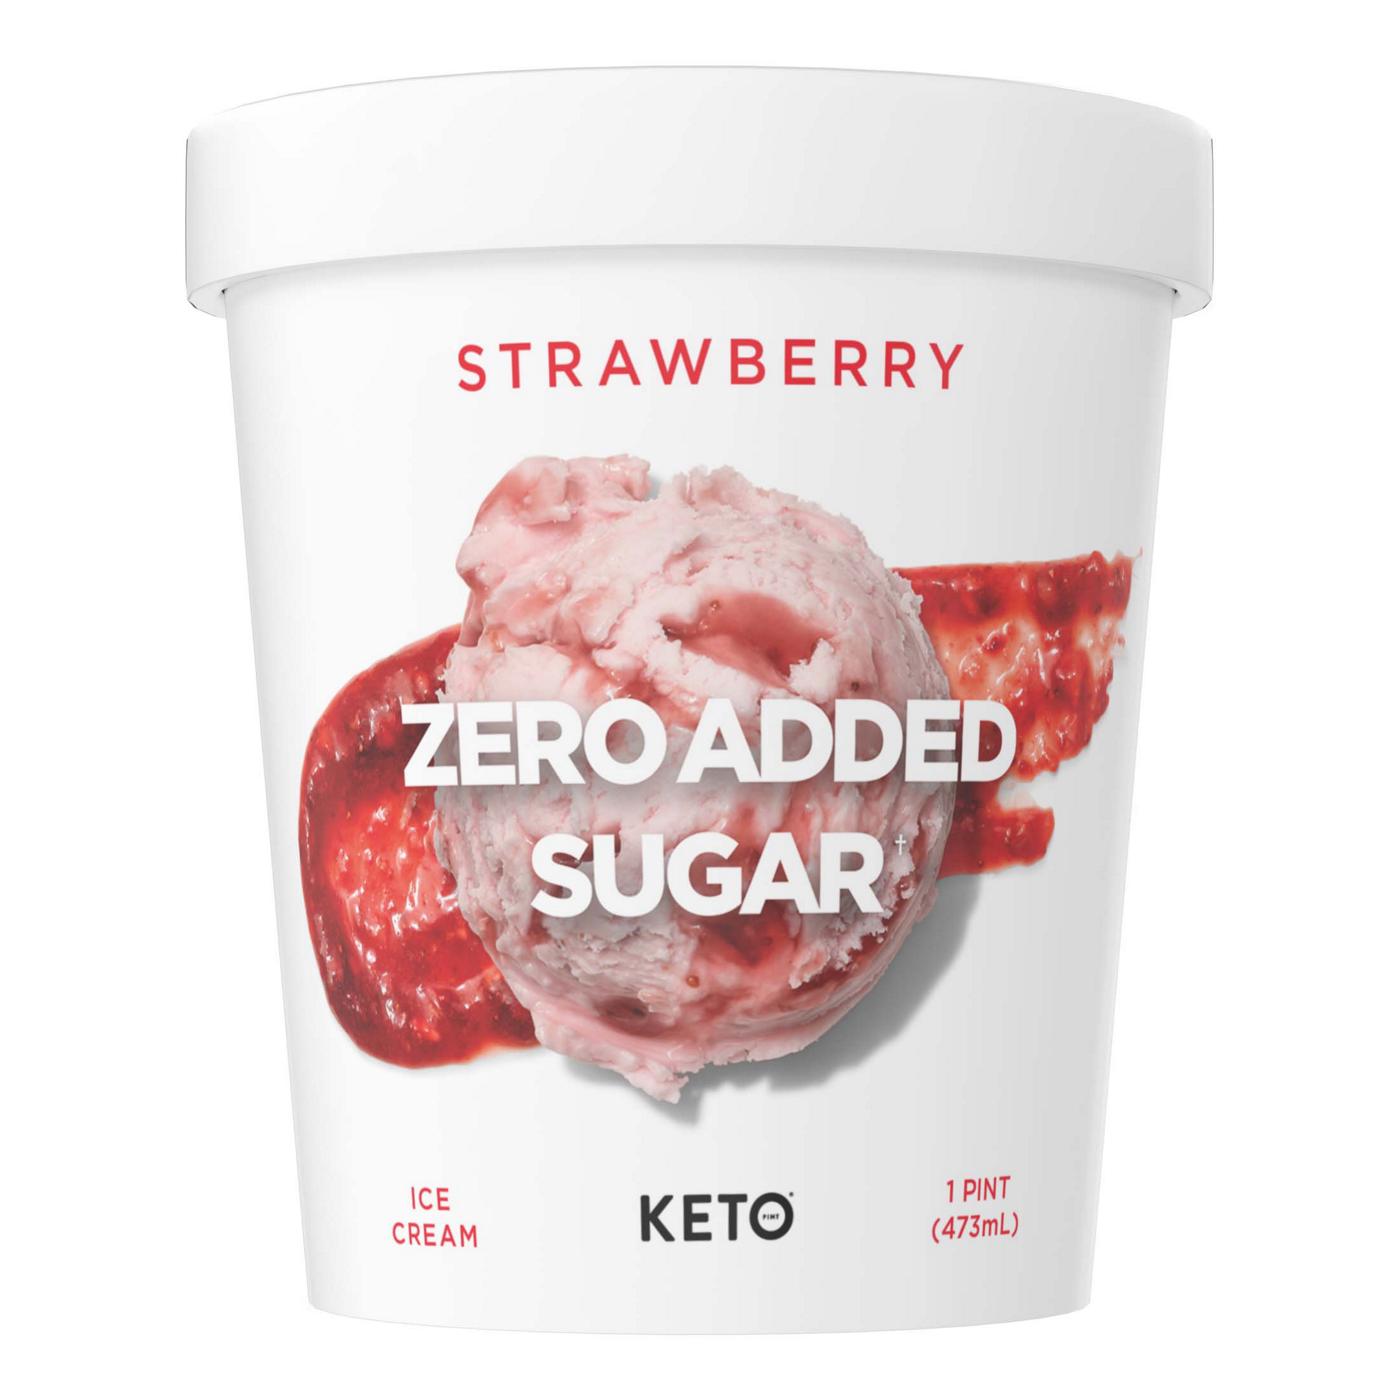 Keto Pint Zero Added Sugar Strawberry Ice Cream - Shop Ice Cream at H-E-B